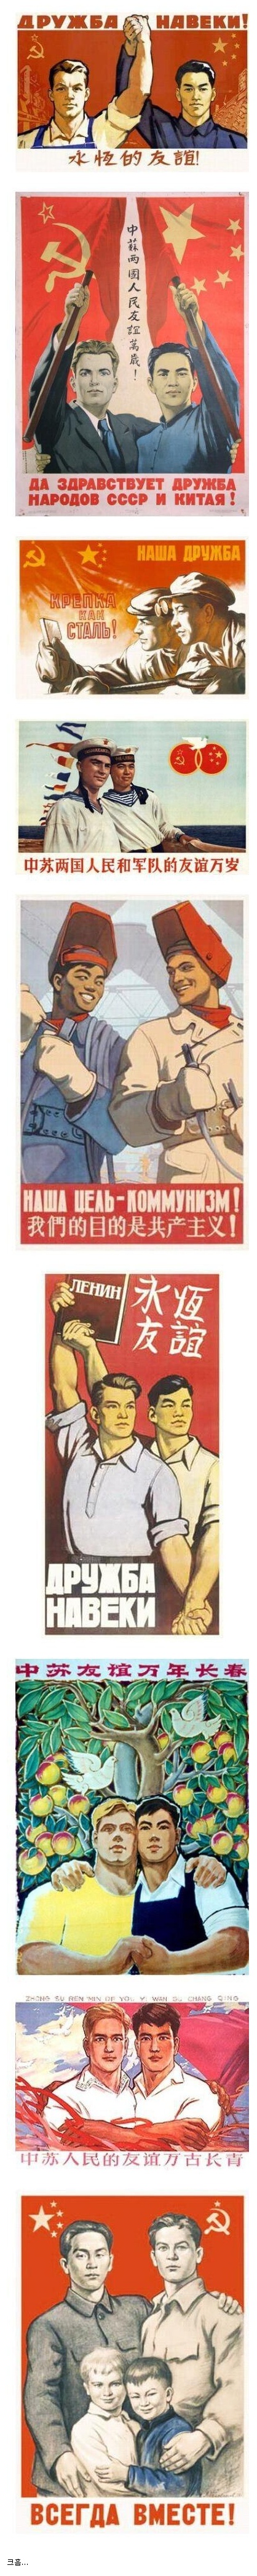 중국 소련 동맹 시절